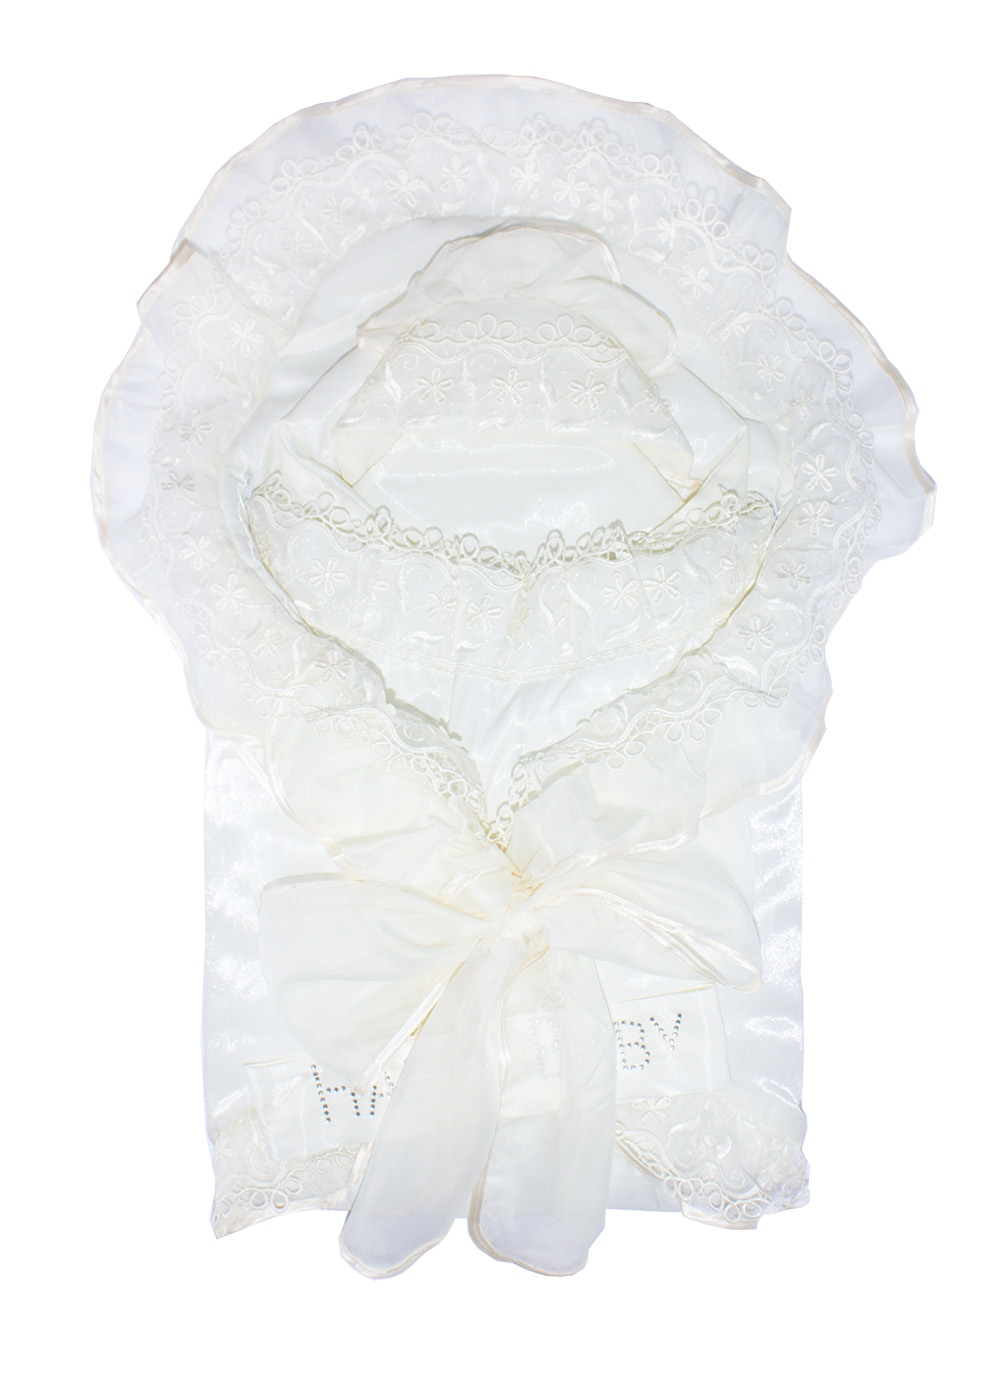 К113М Комплект 6-ти предметный зимний на меху: конверт, одеяло, чепчик, распашонка,ползунки, чепчик